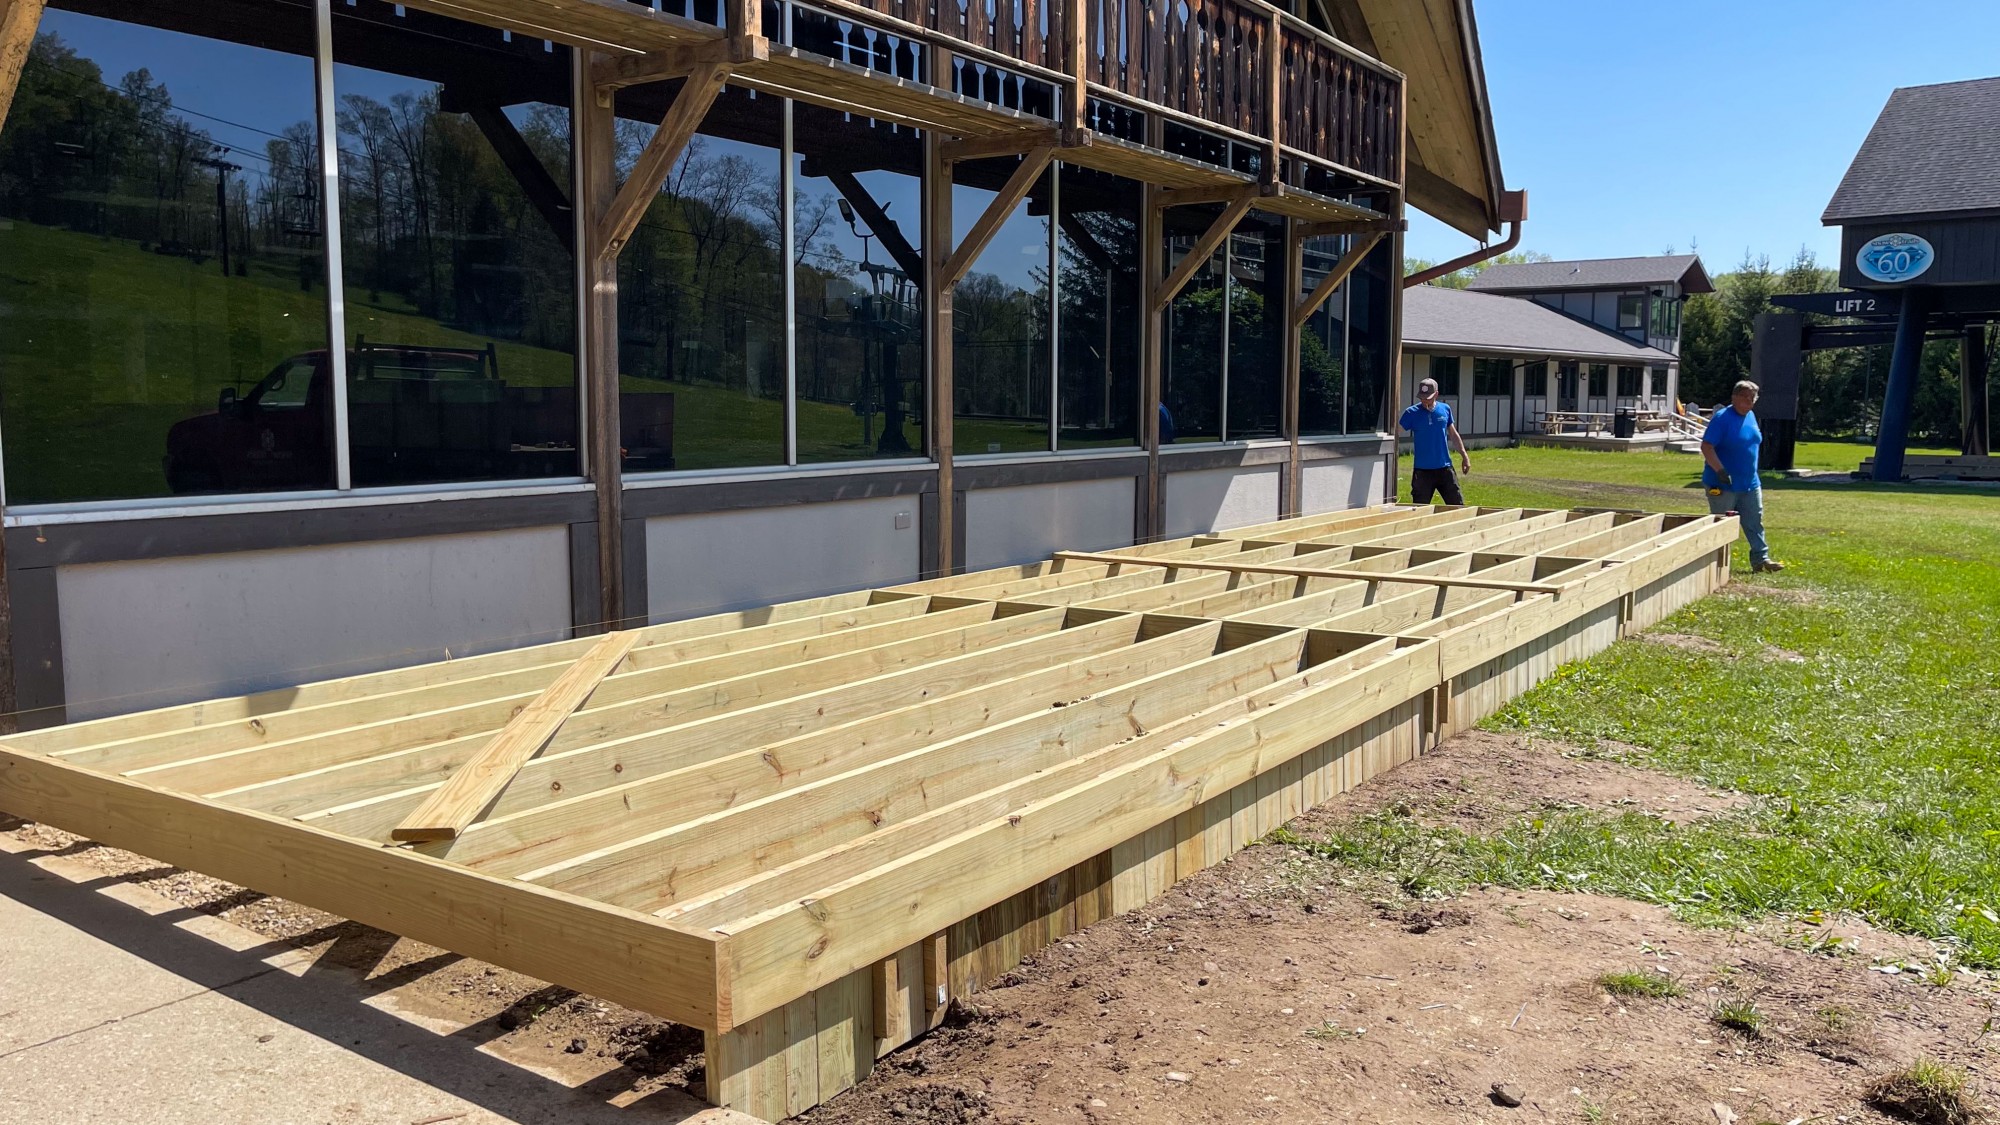 Wood Deck Construction for Ski Racks off Ski Lodge Cafeteria